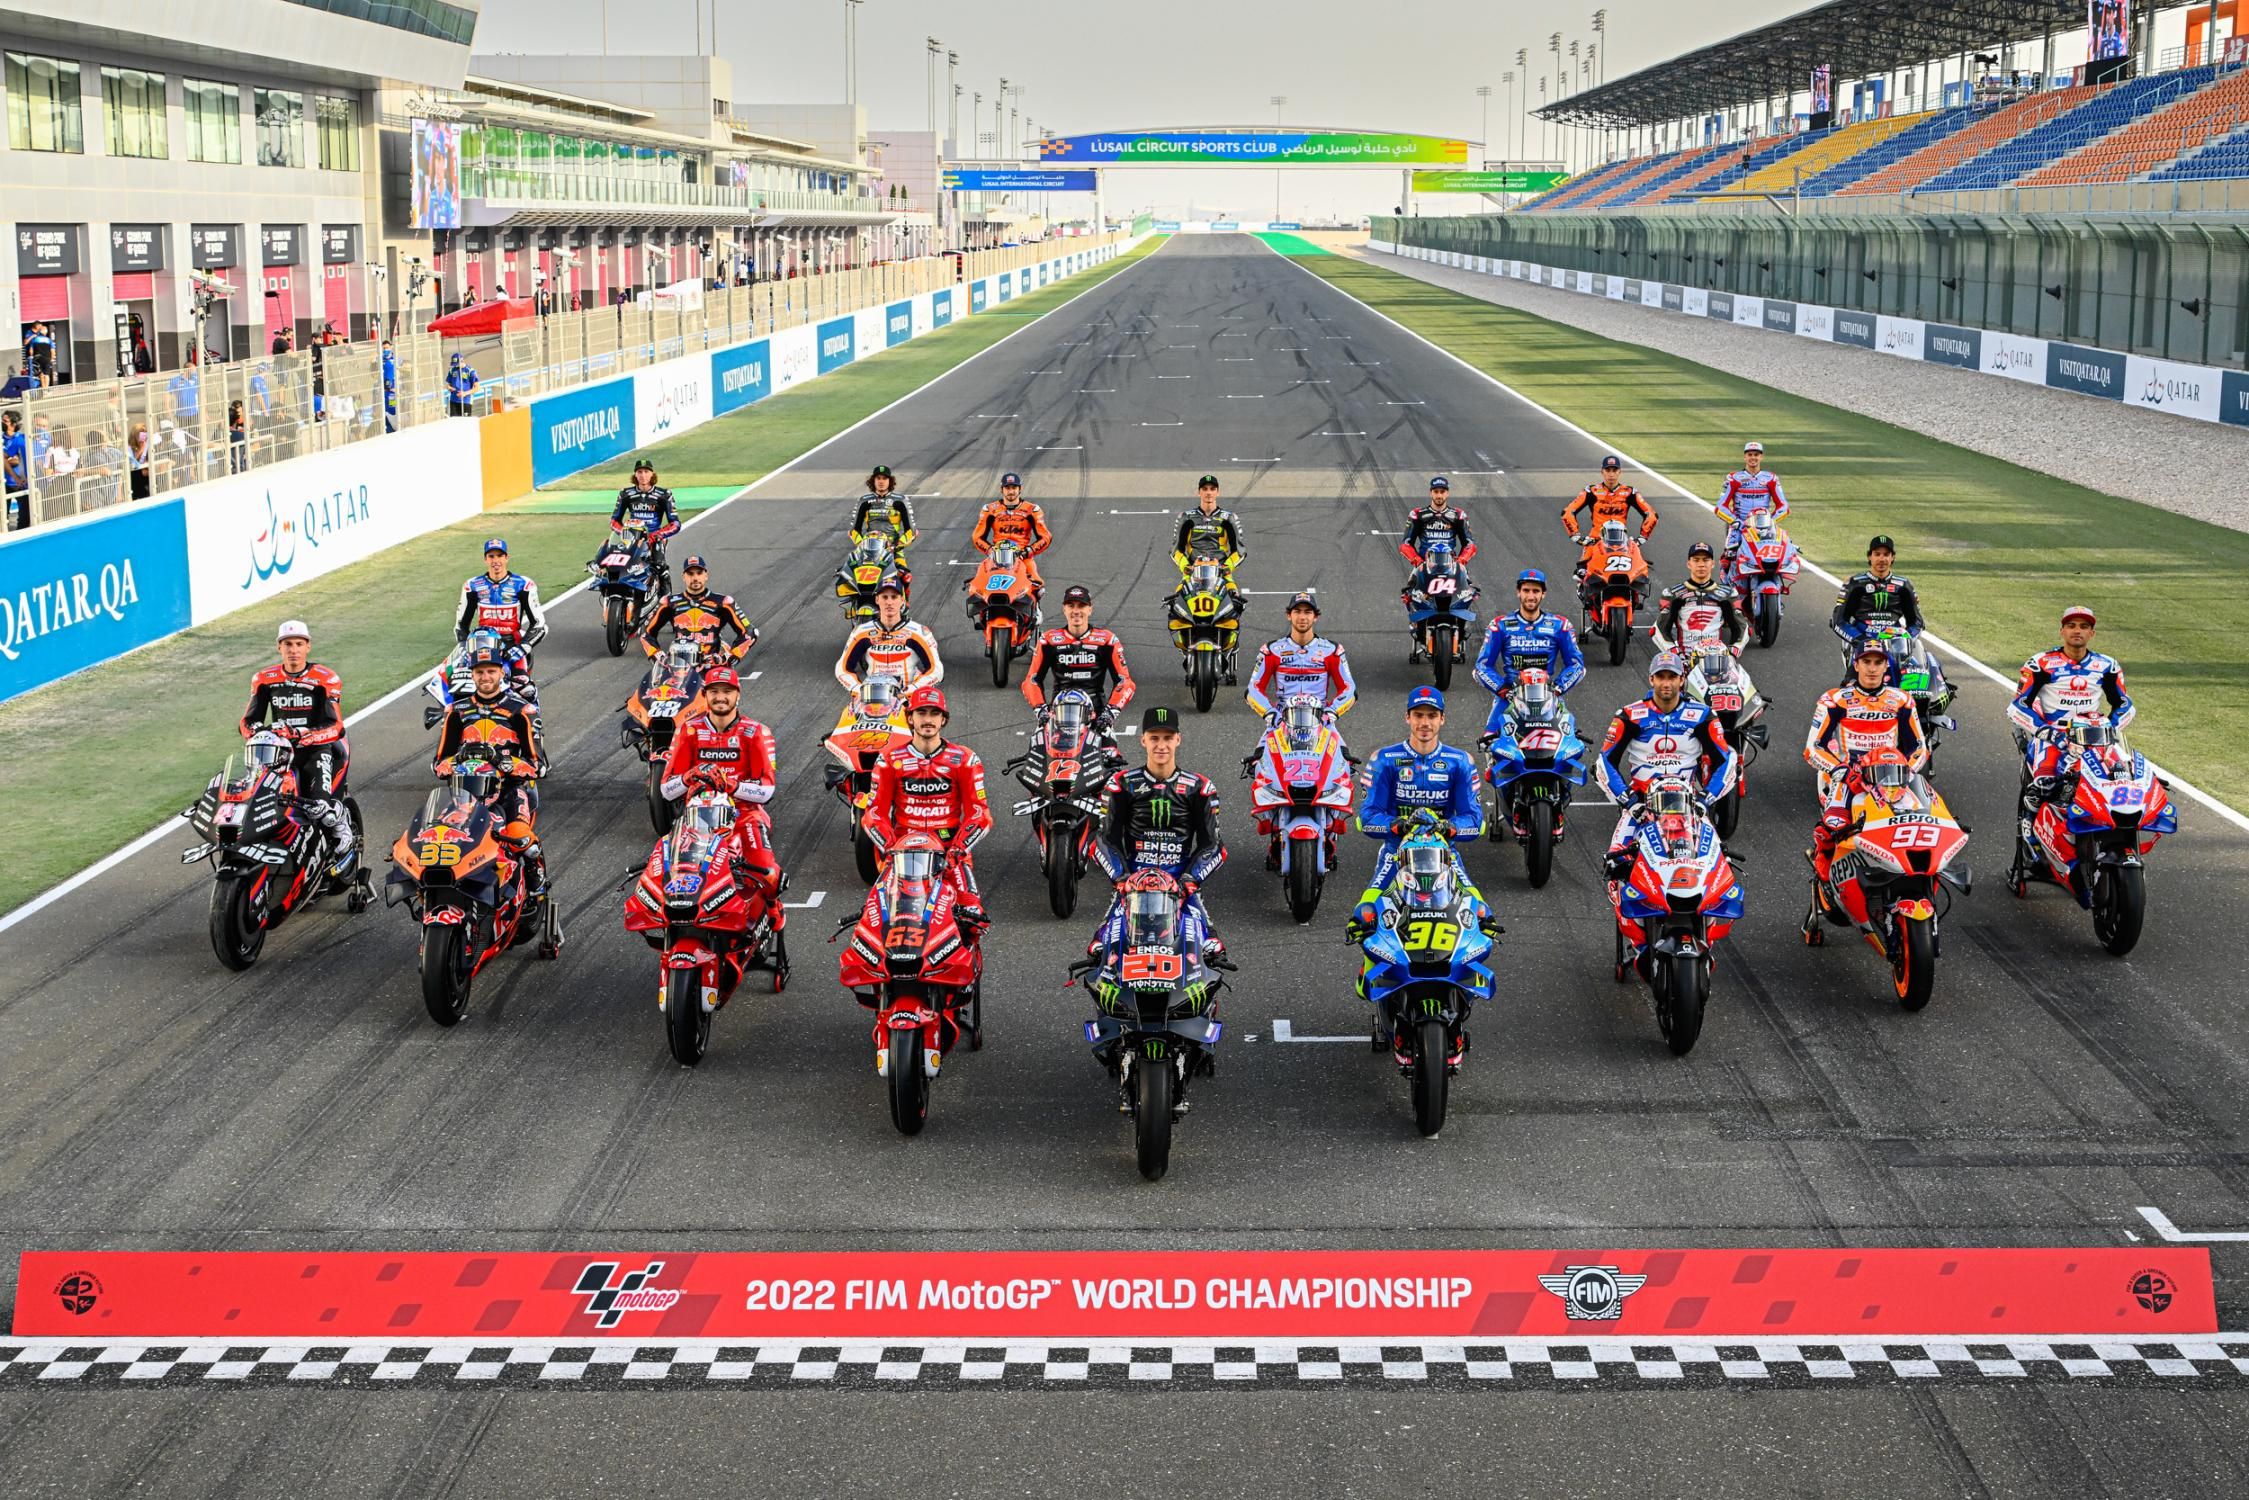 Nonton Live Streaming MotoGP Mandalika 2022 Gratis, Simak Link dan Jadwalnya